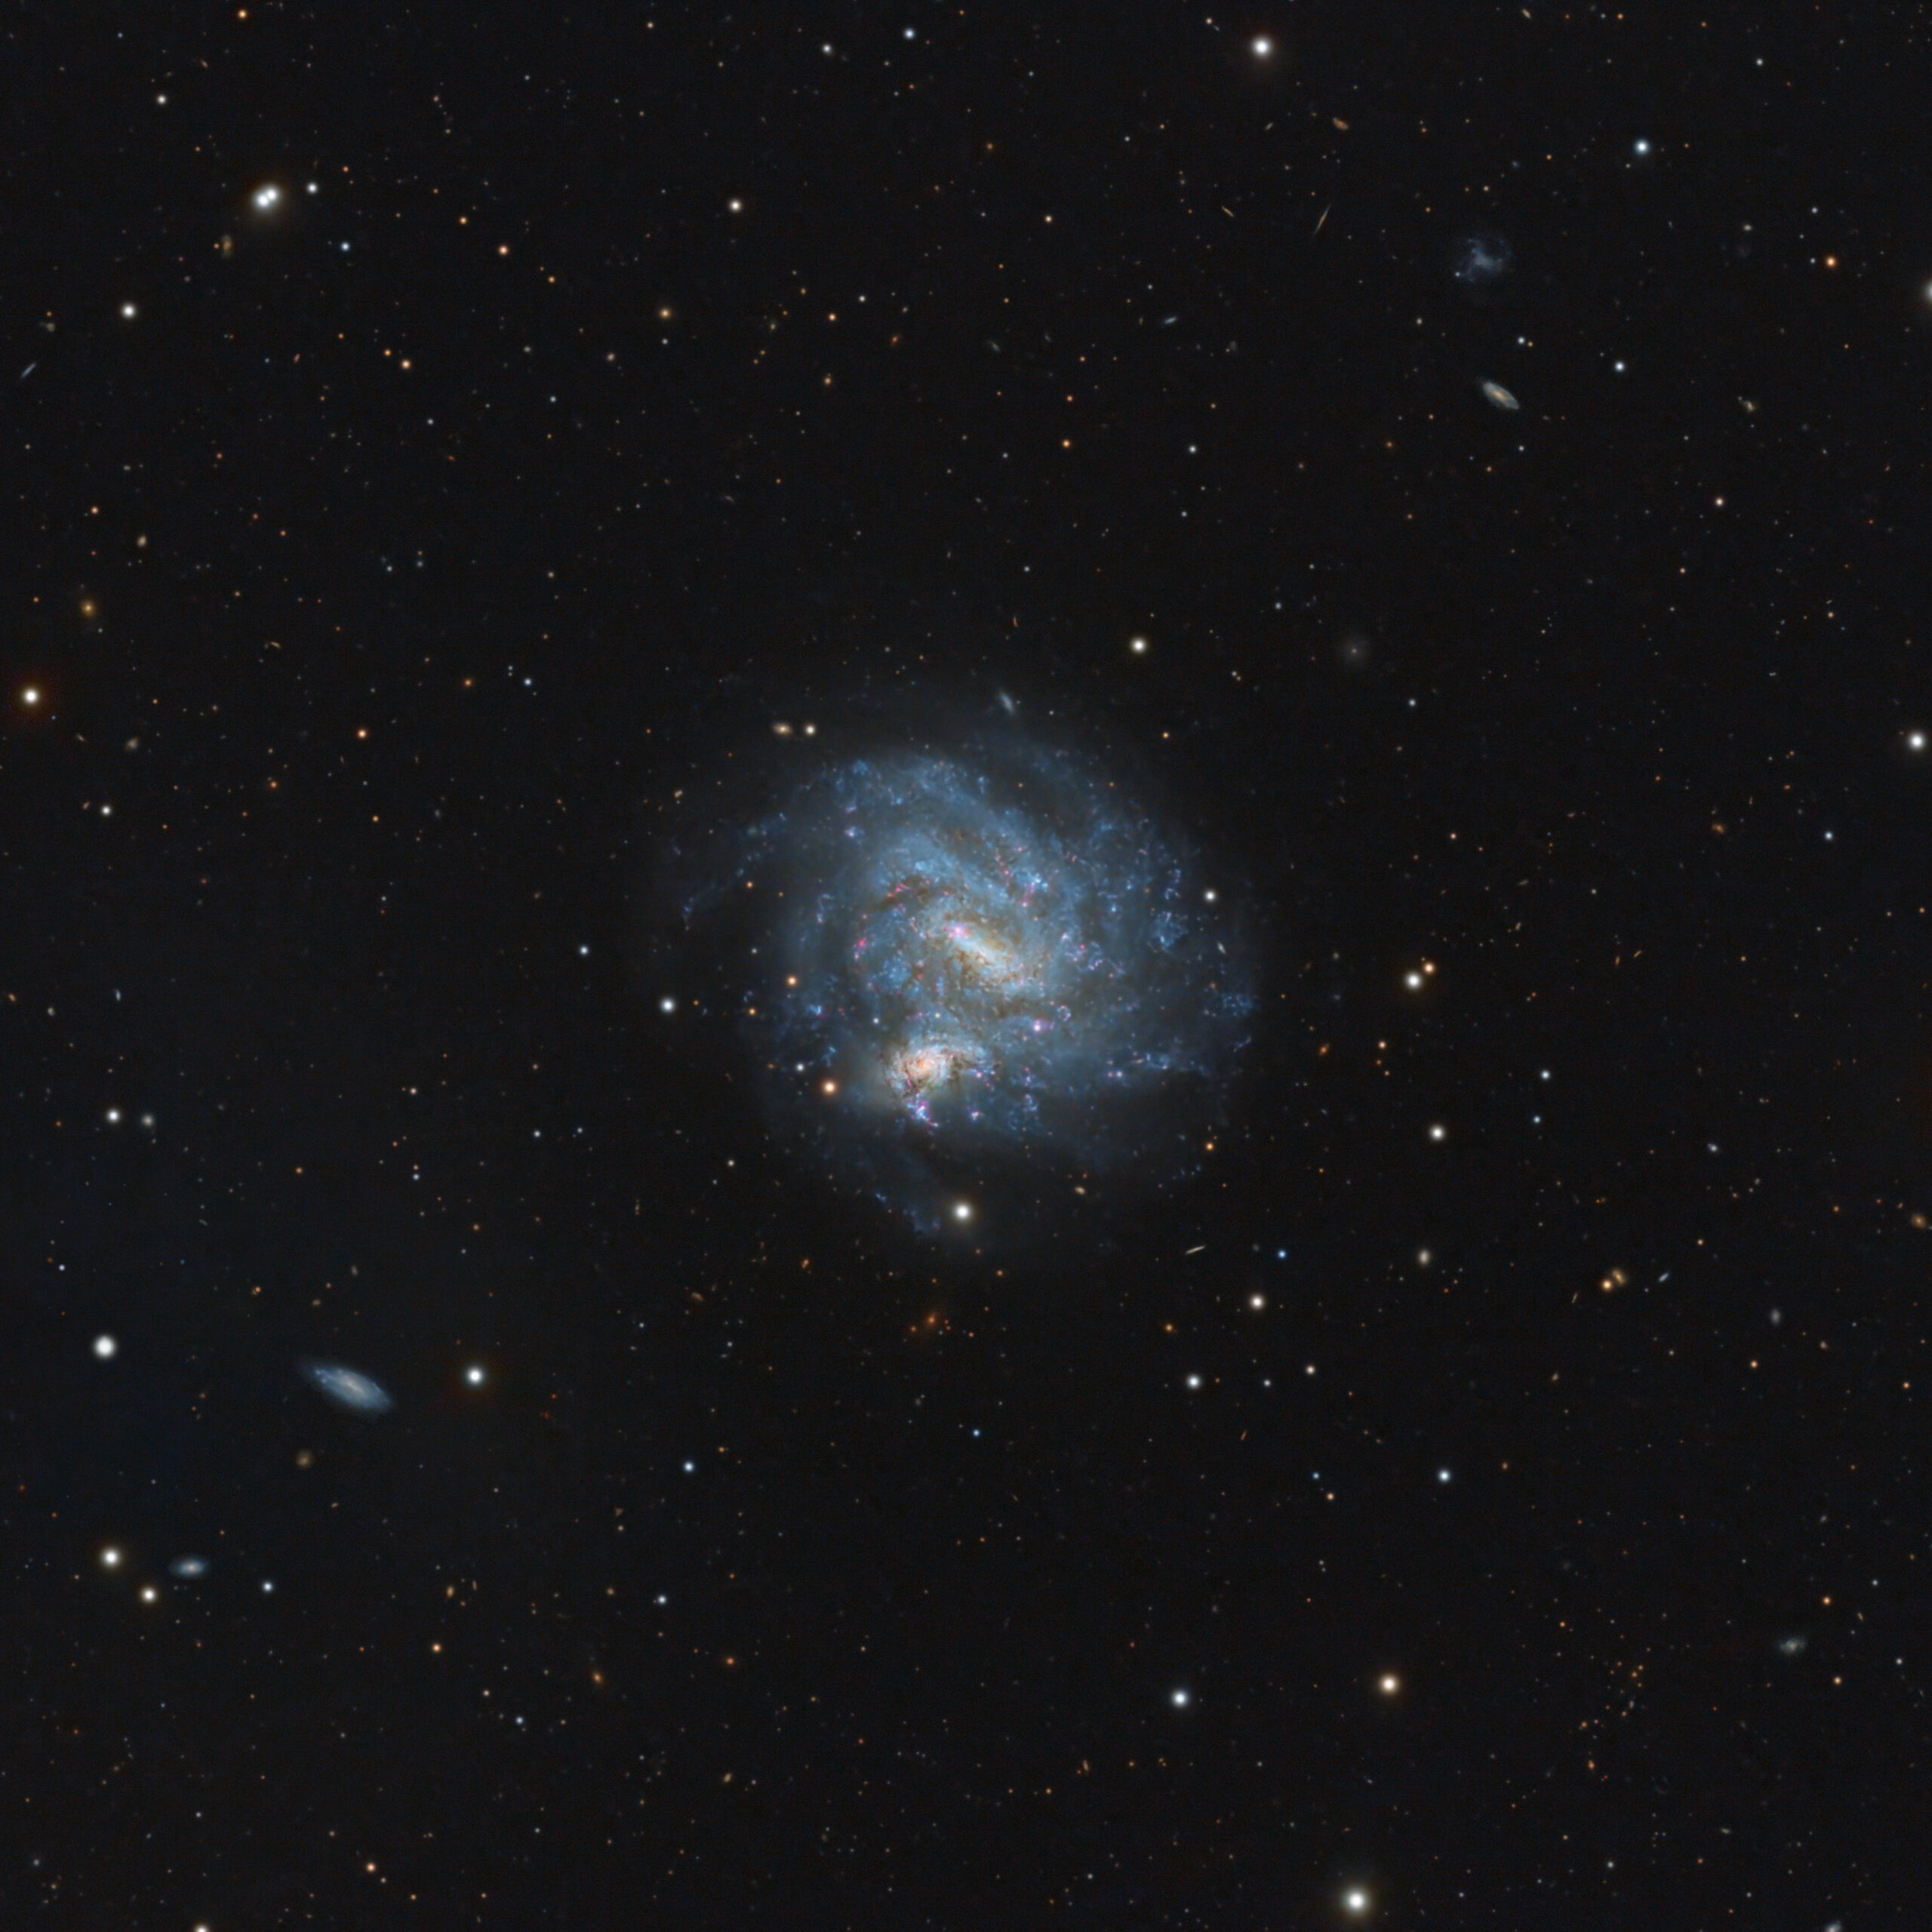 NGC 4496